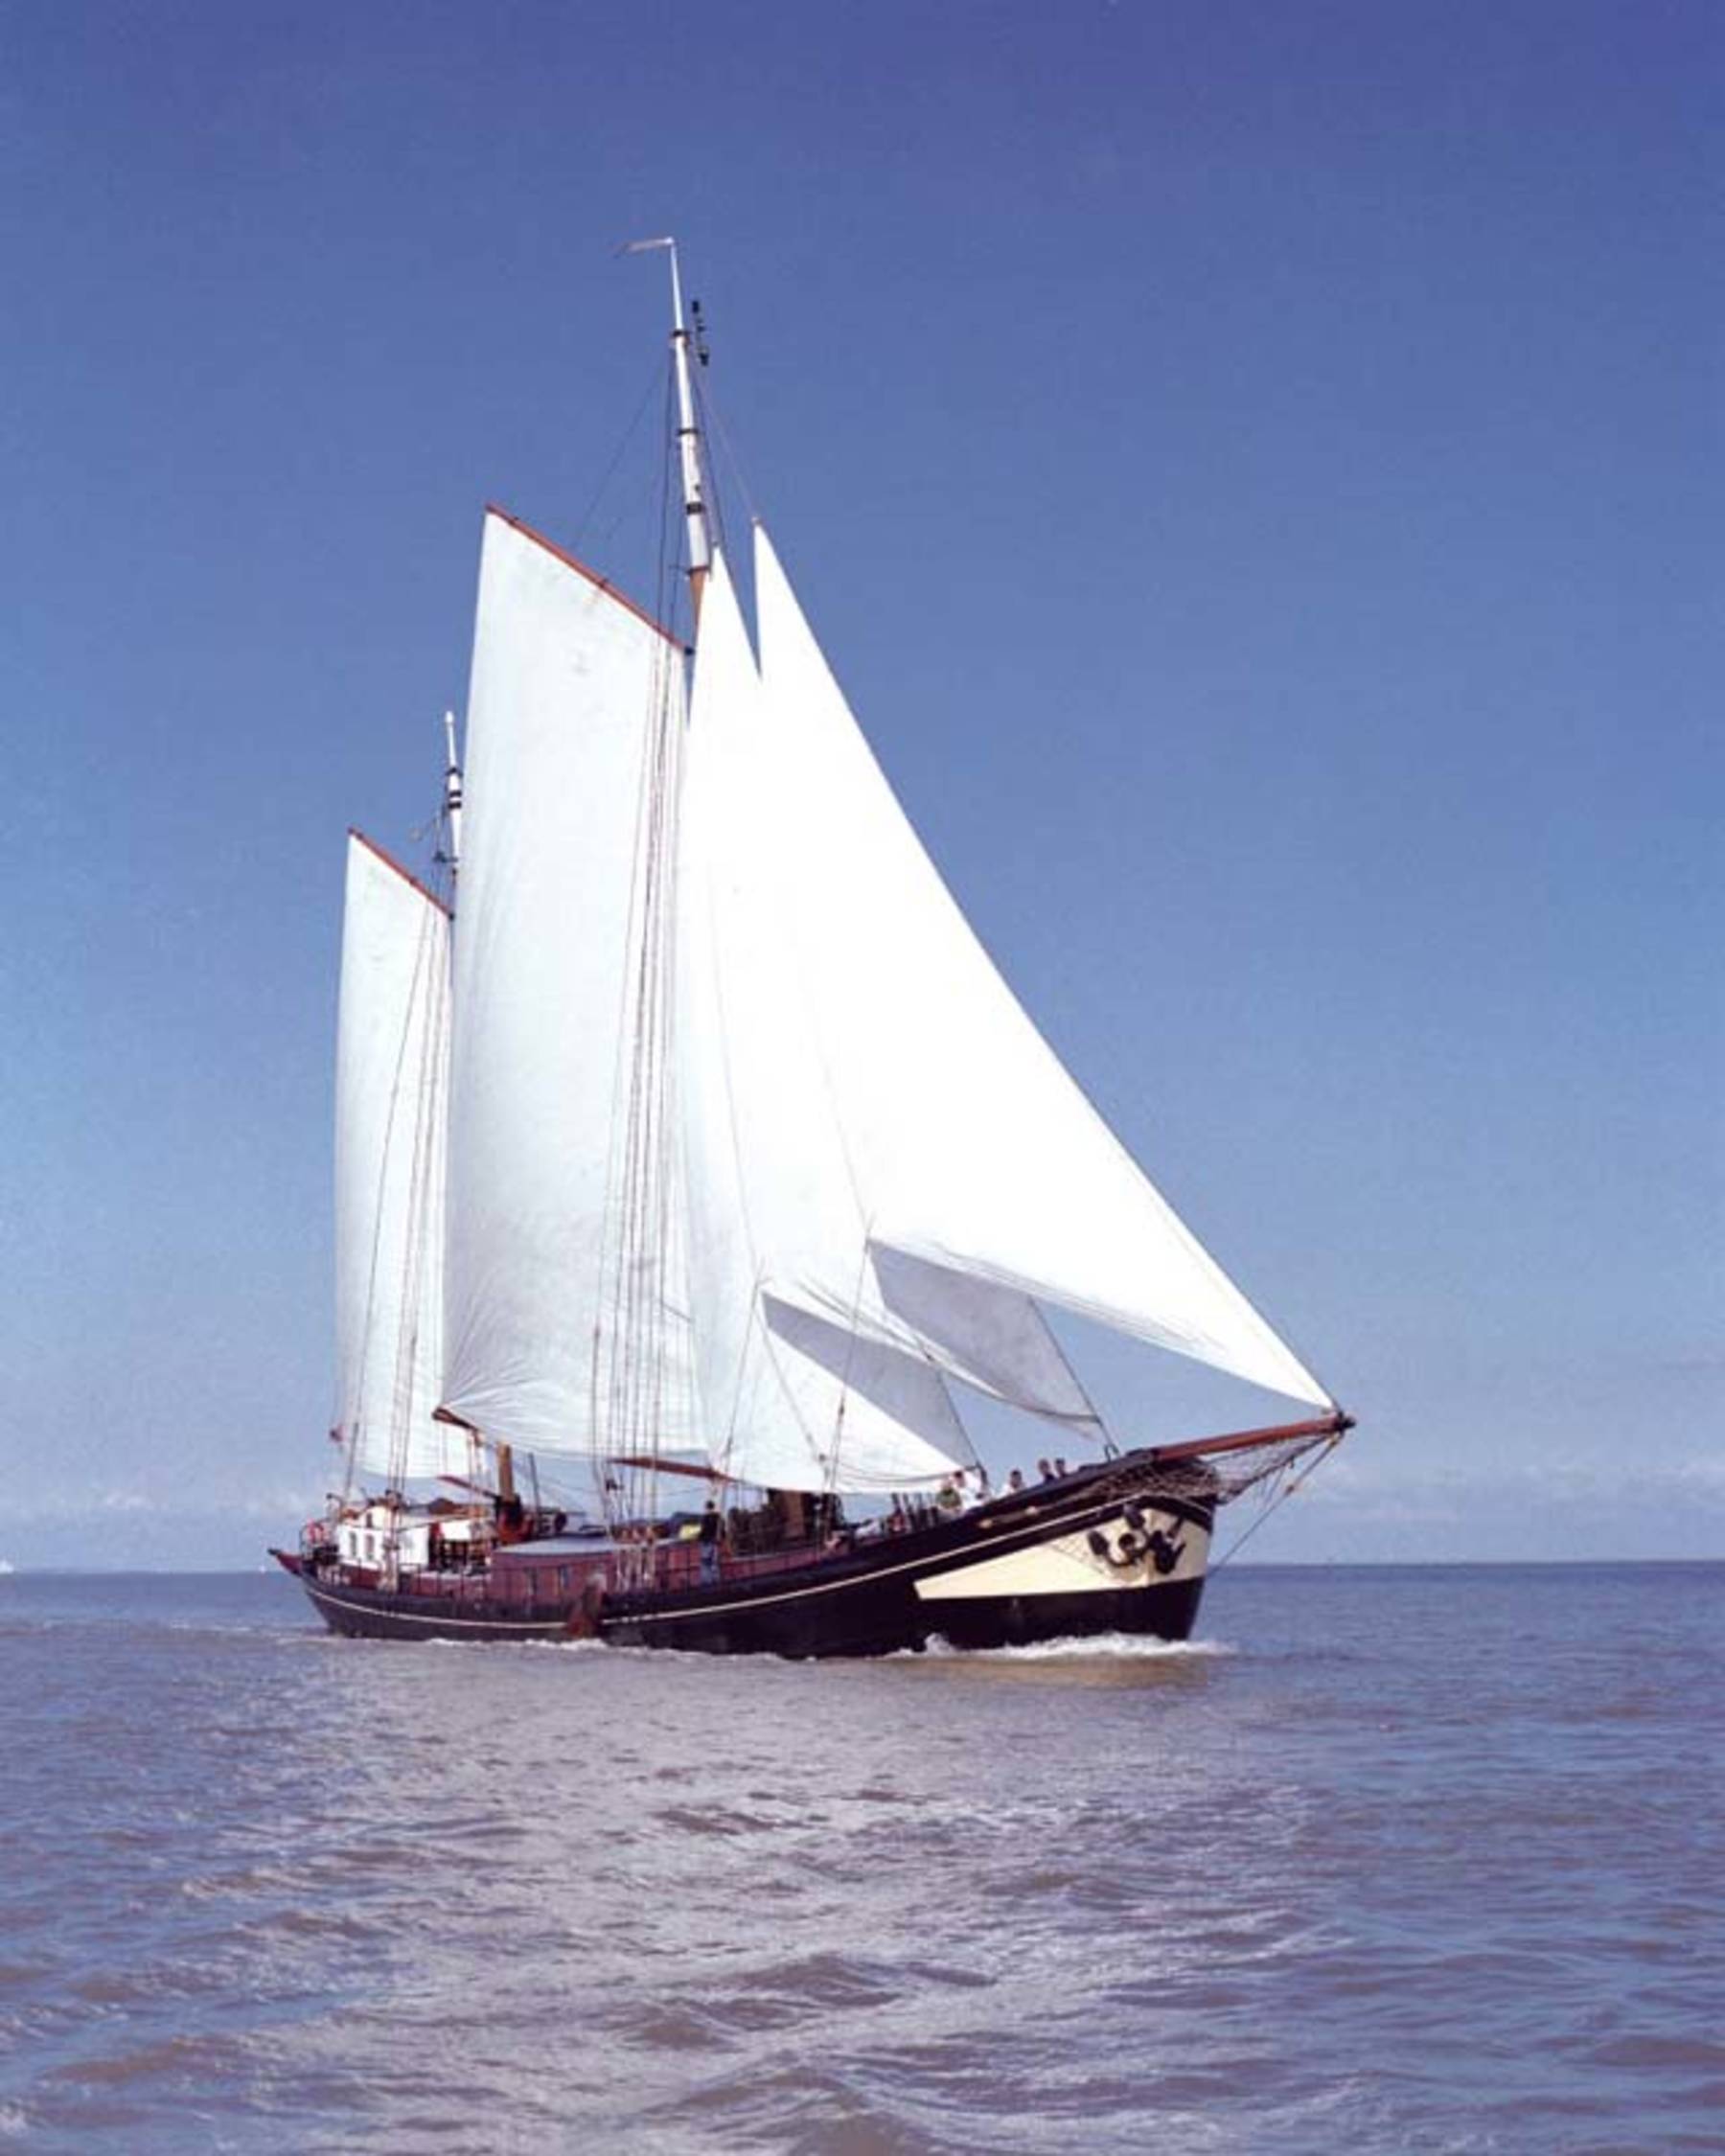 Ein Wochenende mit der Iselmar ab Enkhuizen auf dem IJsselmeer oder Wattenmeer segeln